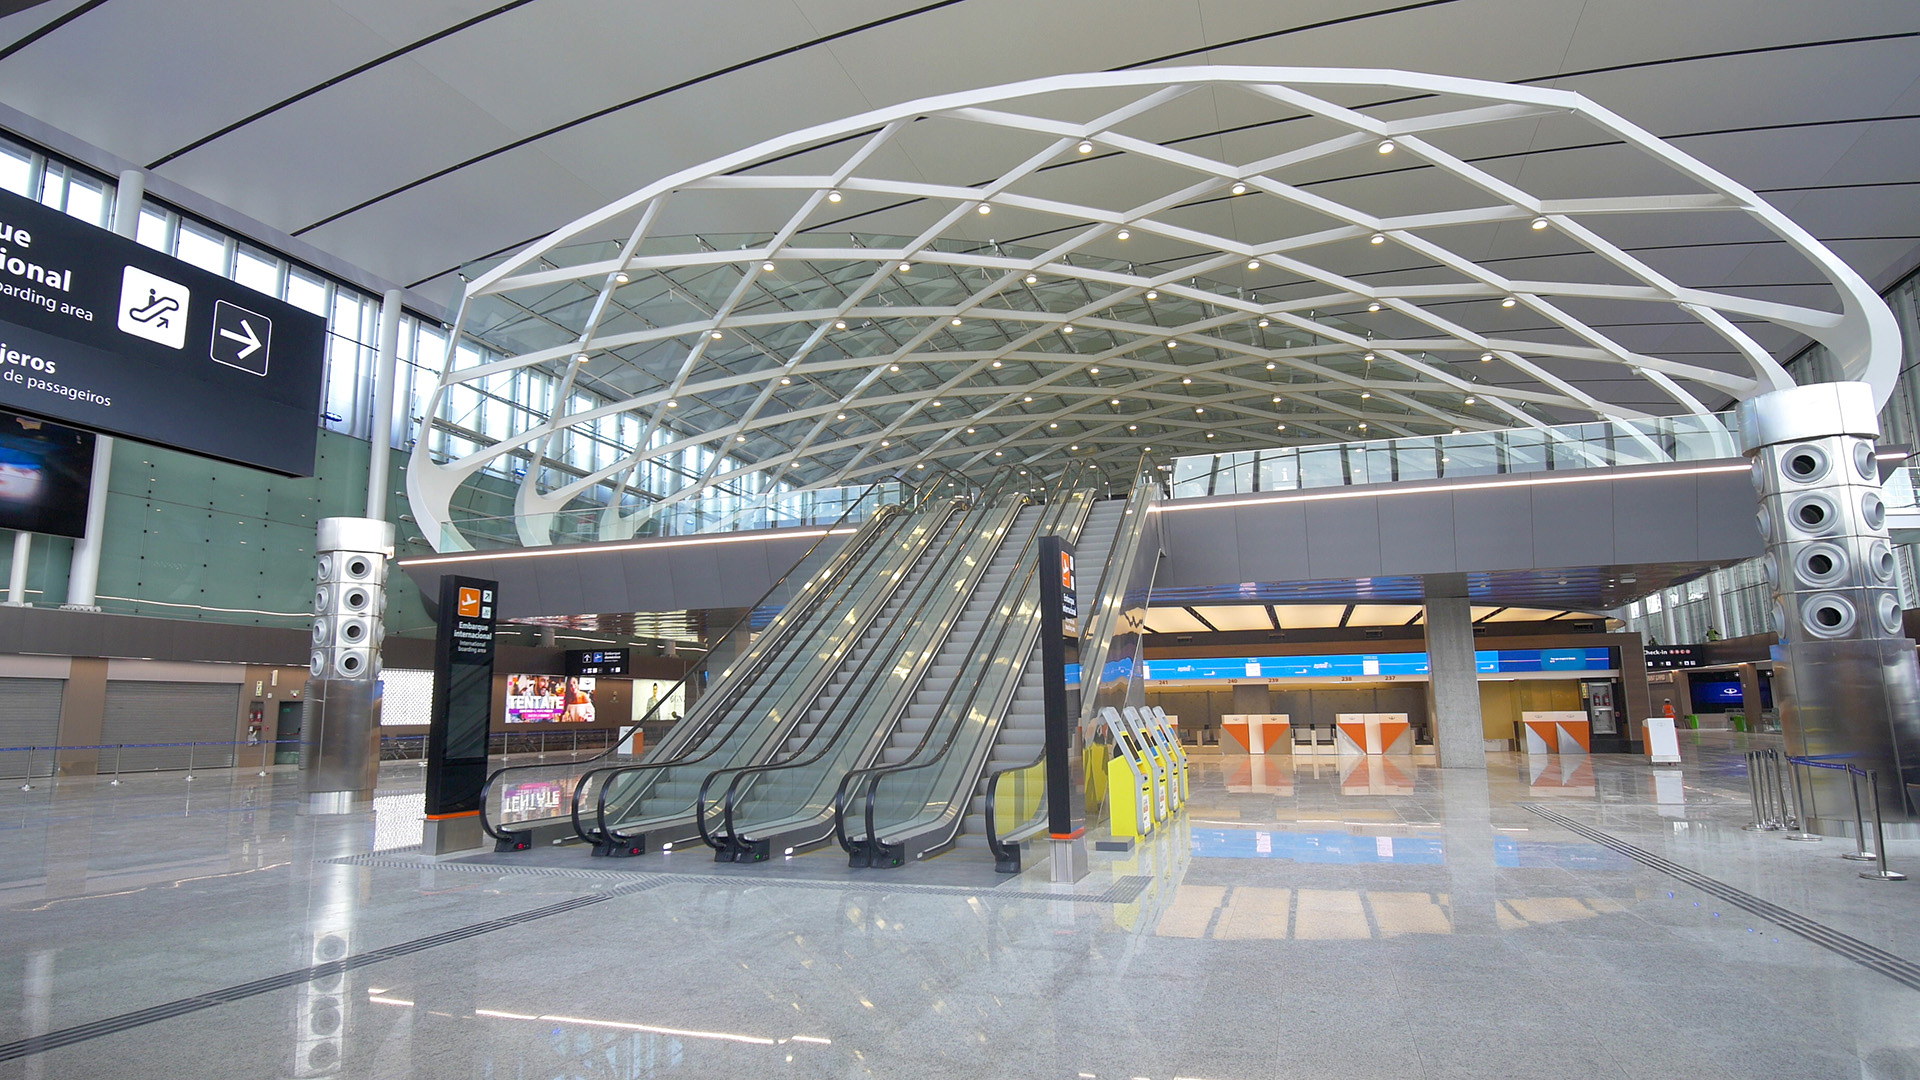 La estructura del Zeppelin en el segundo nivel del aeropuerto, con más de 2100 piezas de vidrio